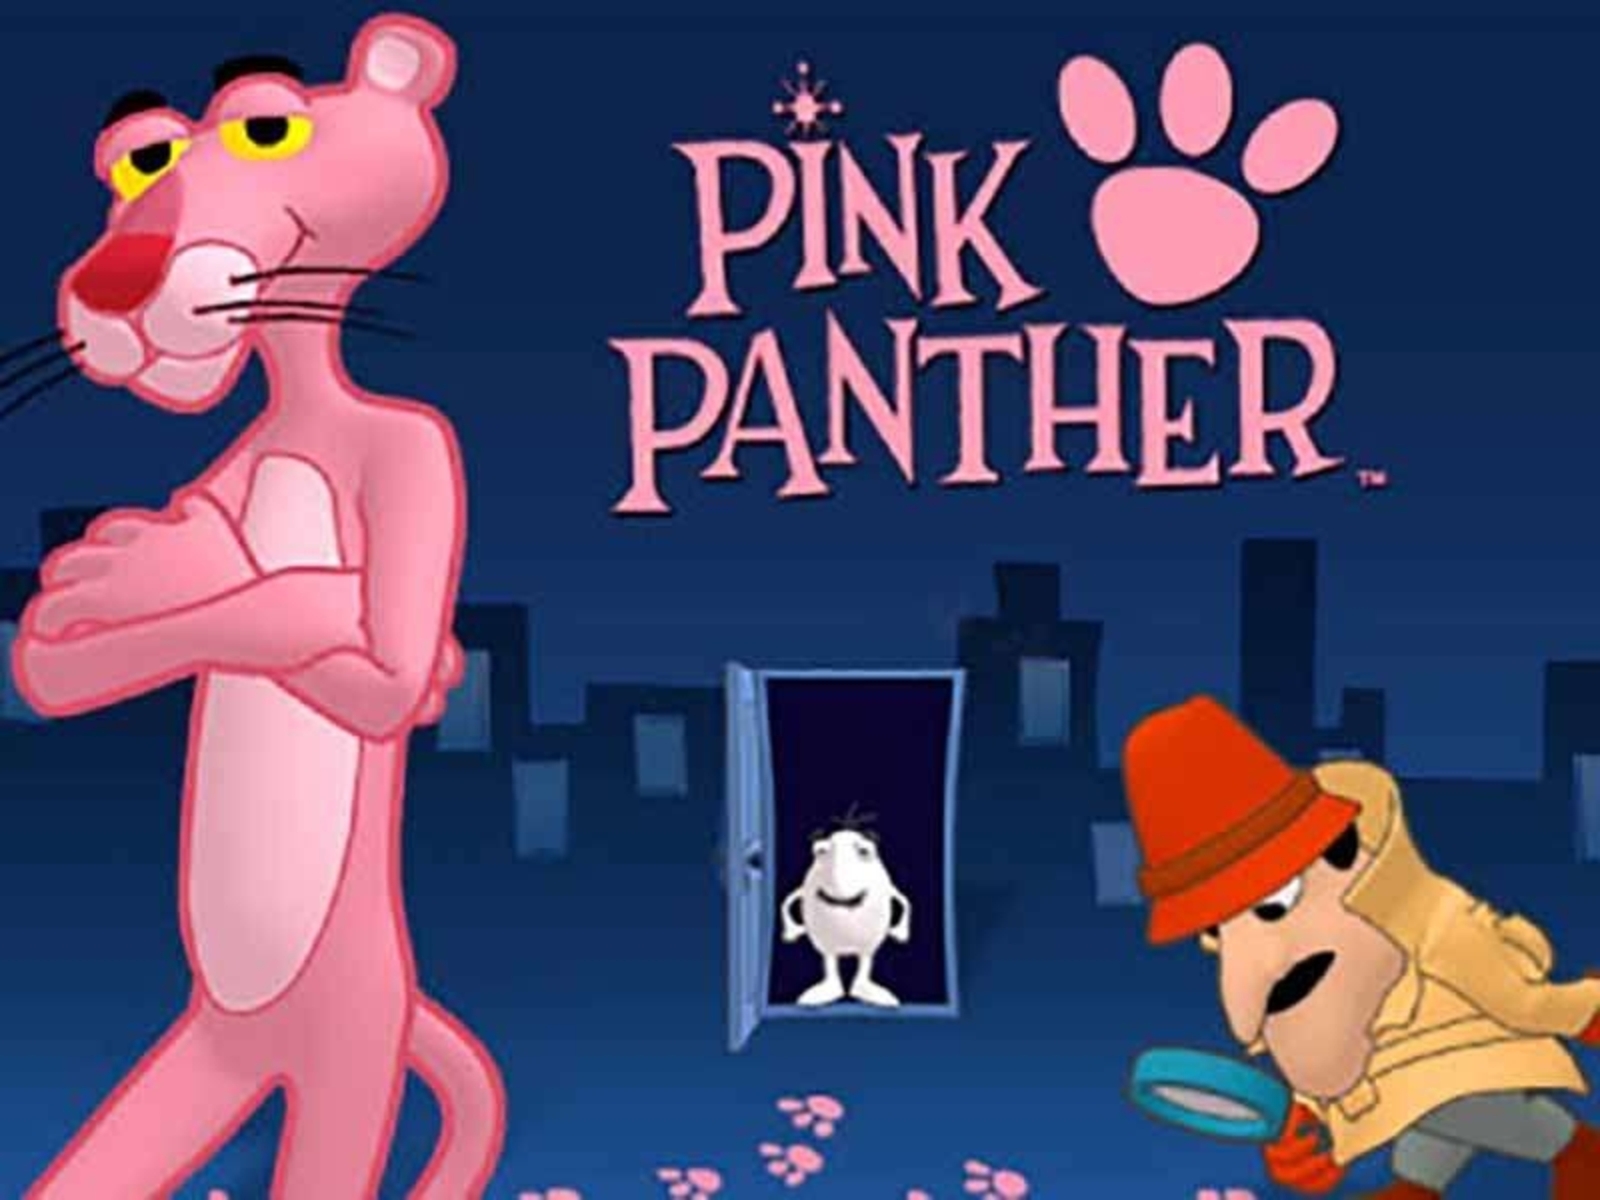 Pink Panther demo